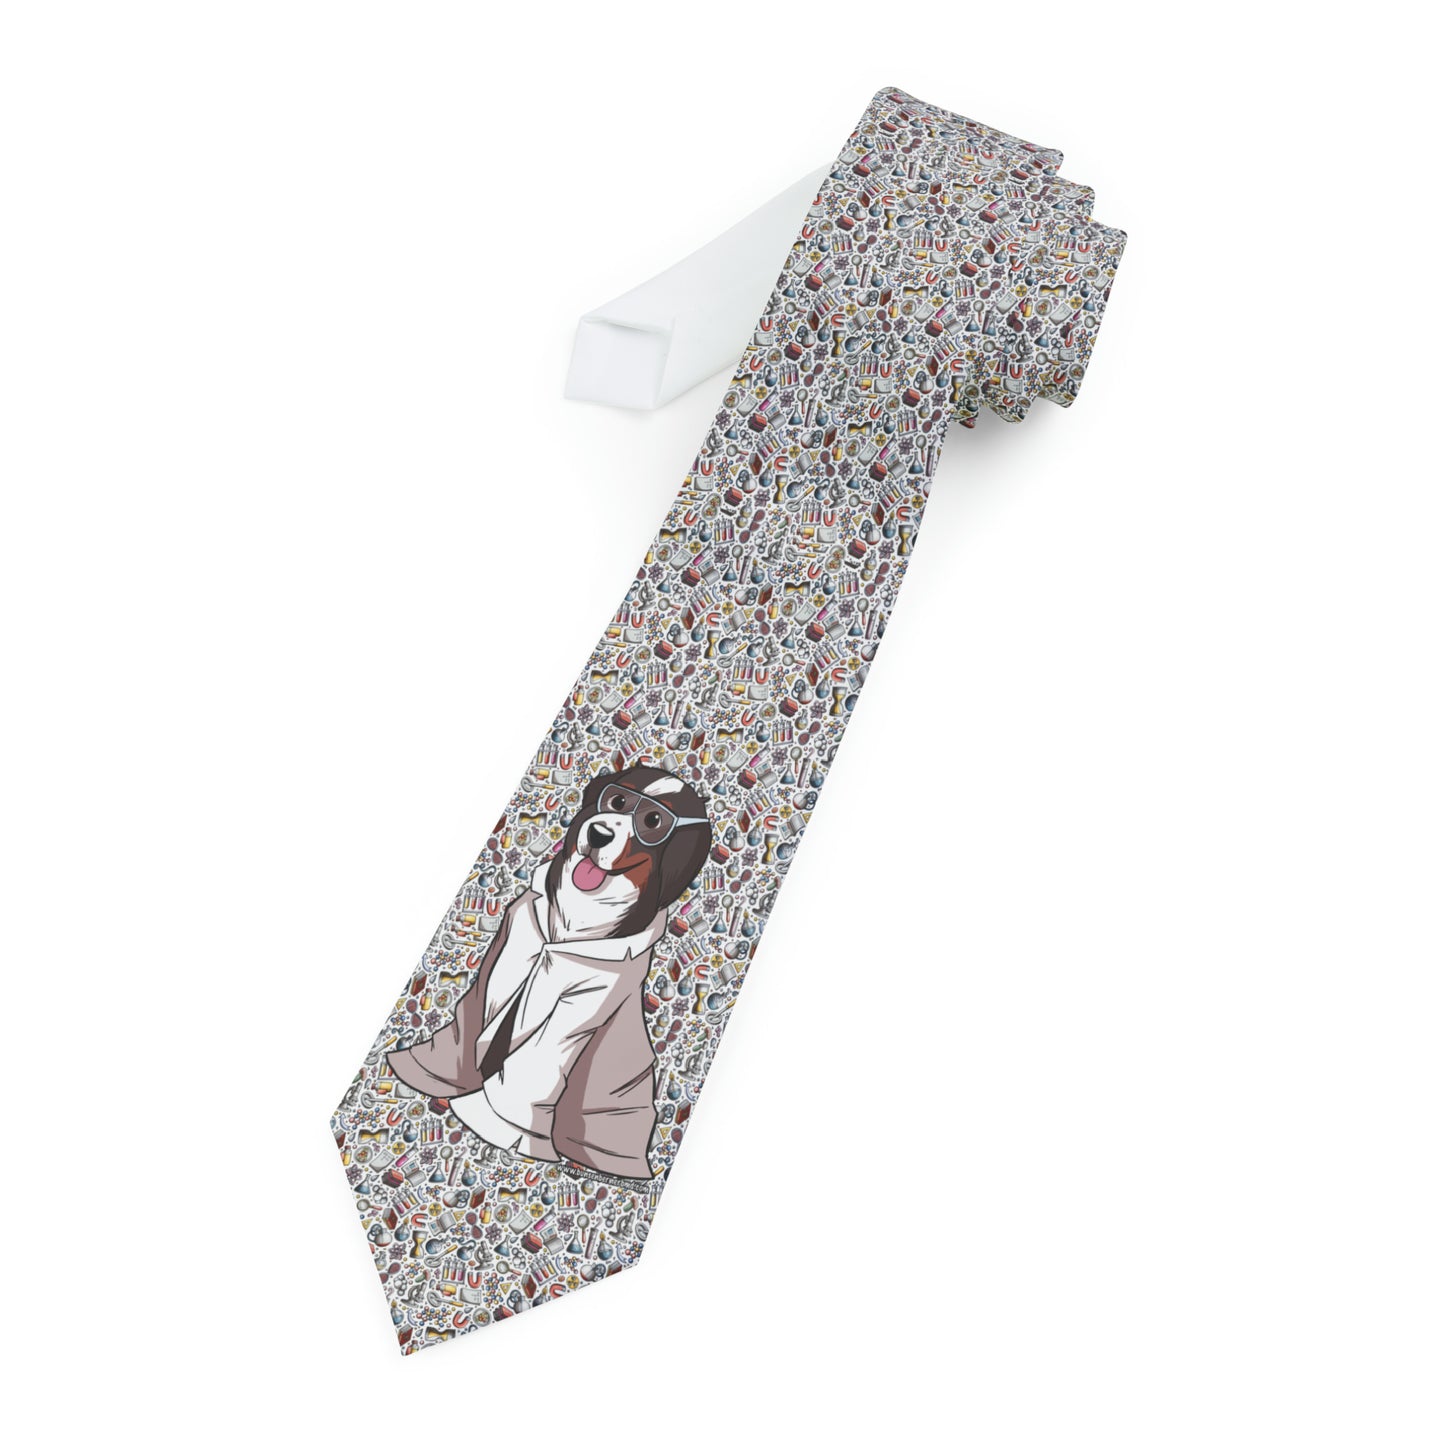 The Bunsen Necktie